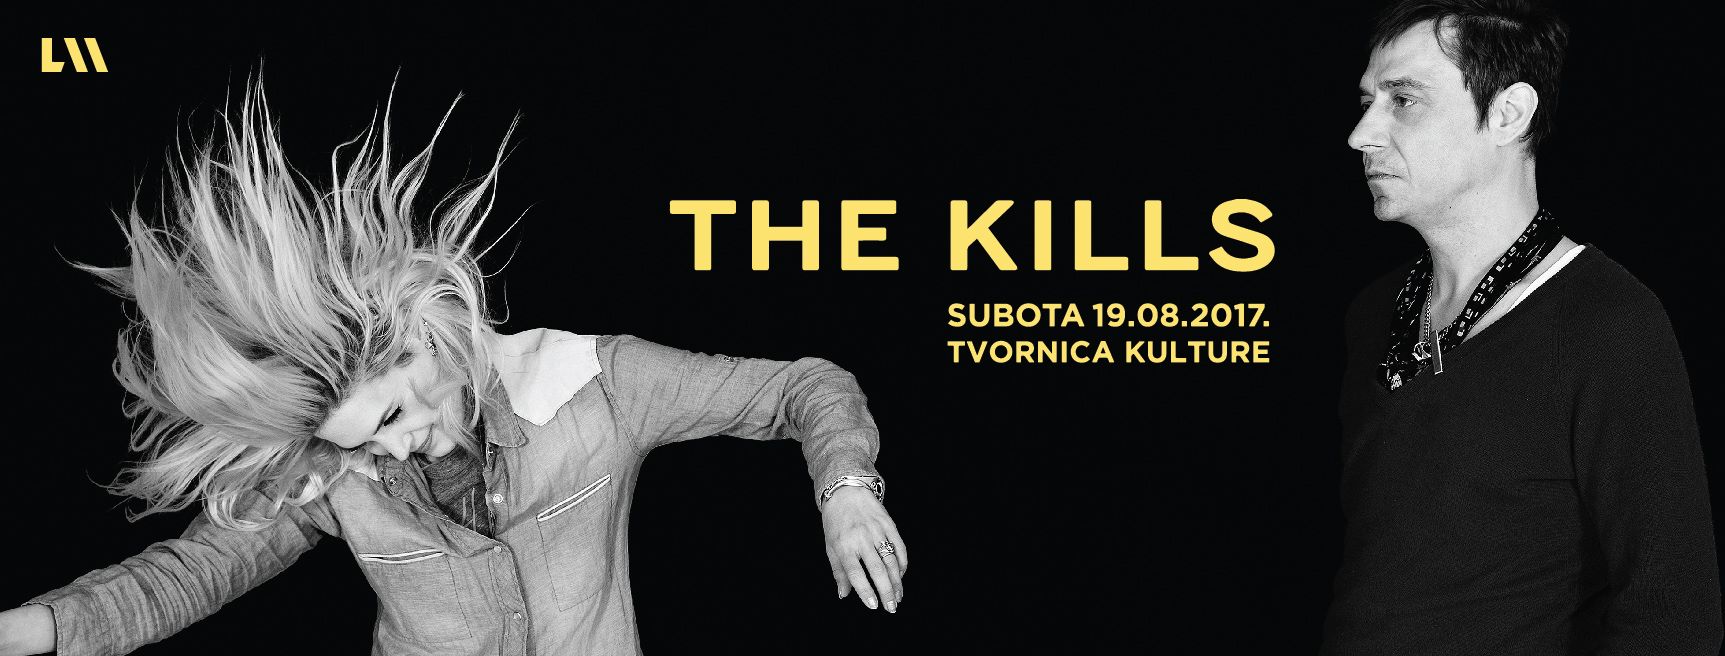 [:en]The Kills, Zagreb, 19.08.2017